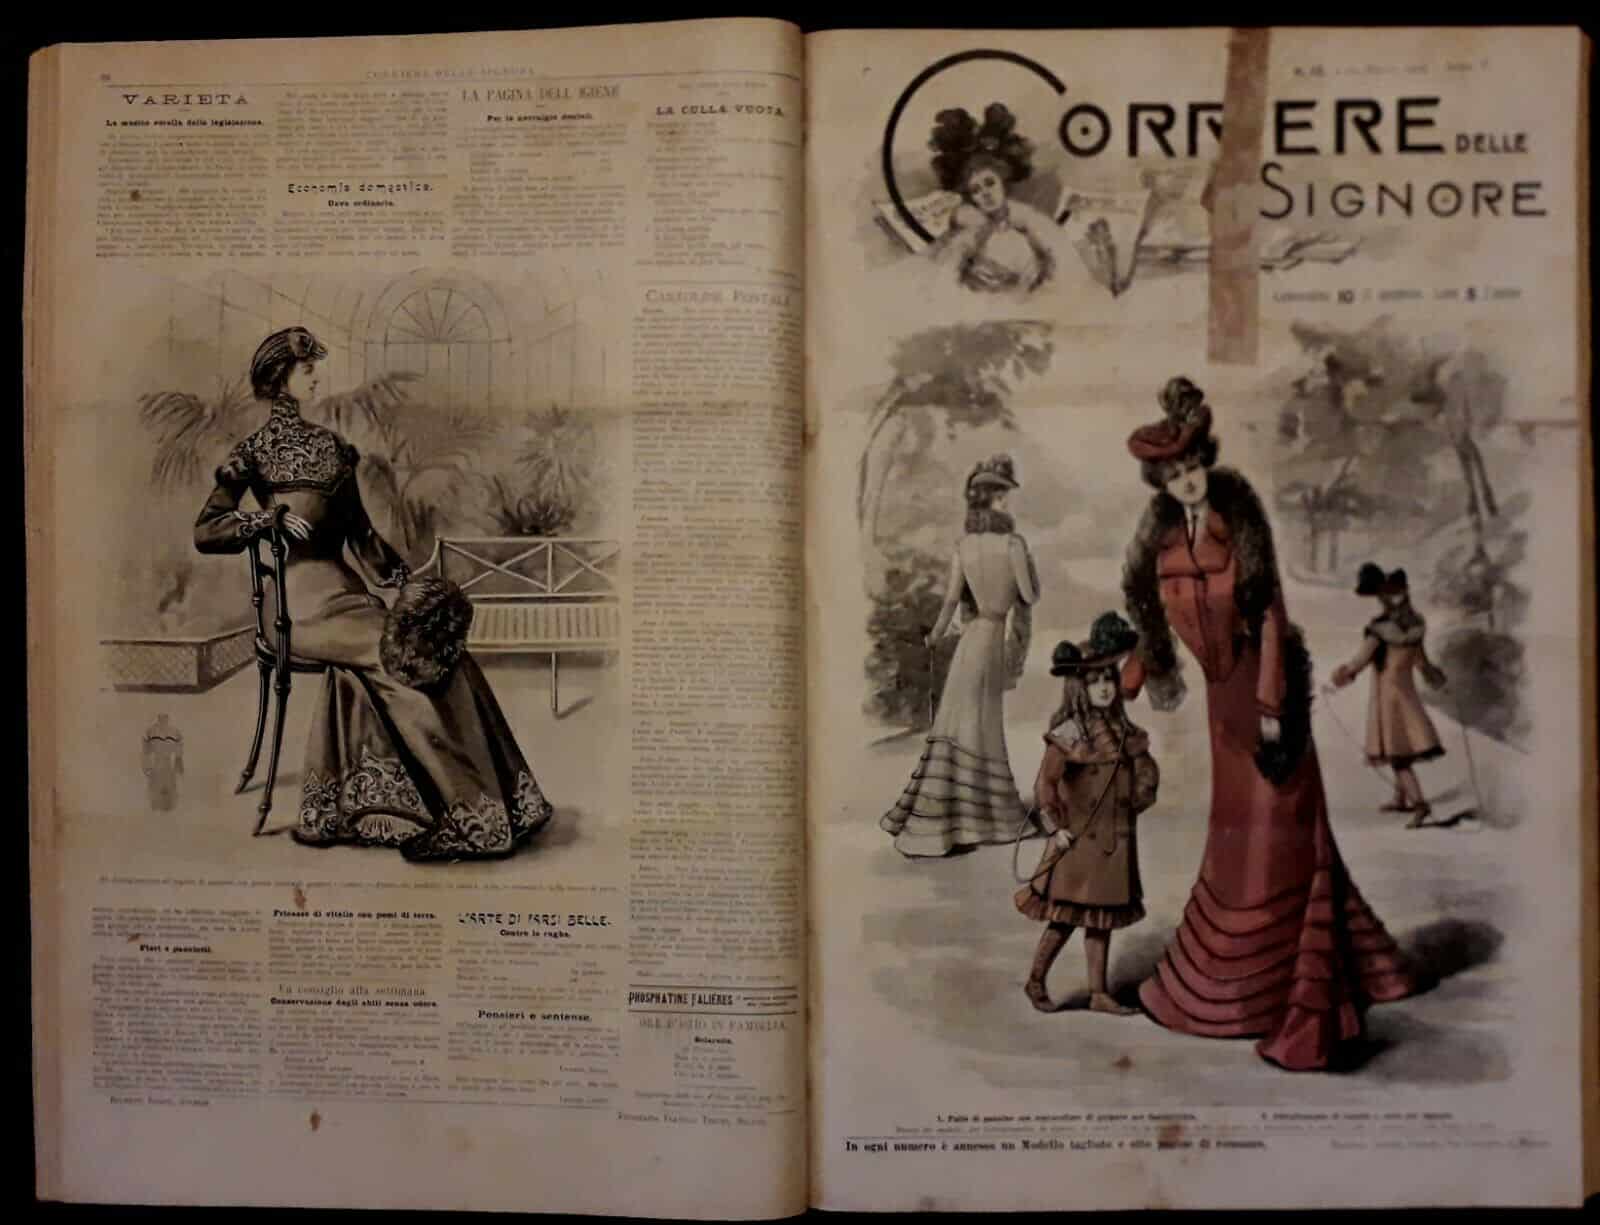 La Saison, Journal Illustré des Ladies, 1880, No. 625. Two women